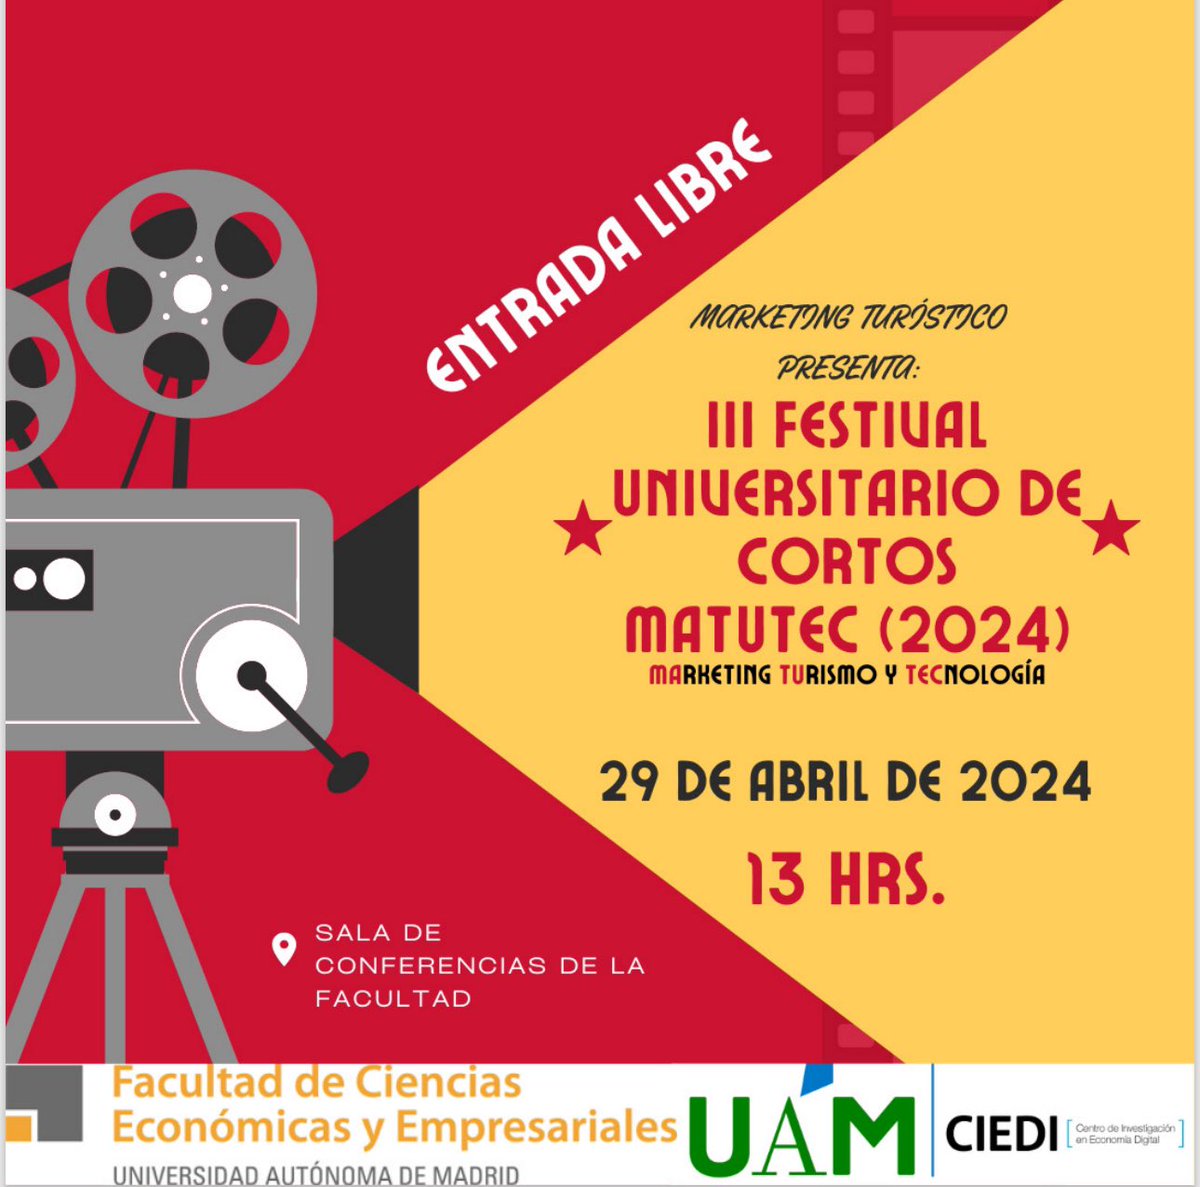 El próximo lunes 29 de abril de 2024, se llevará a cabo la tercera edición del Festival Universitario de Cortos (MATUTEC). La entrada es libre, ¡no te lo pierdas! @UAM_Economicas #uameconomicas #SomosUAM #marketingturistico #marketing